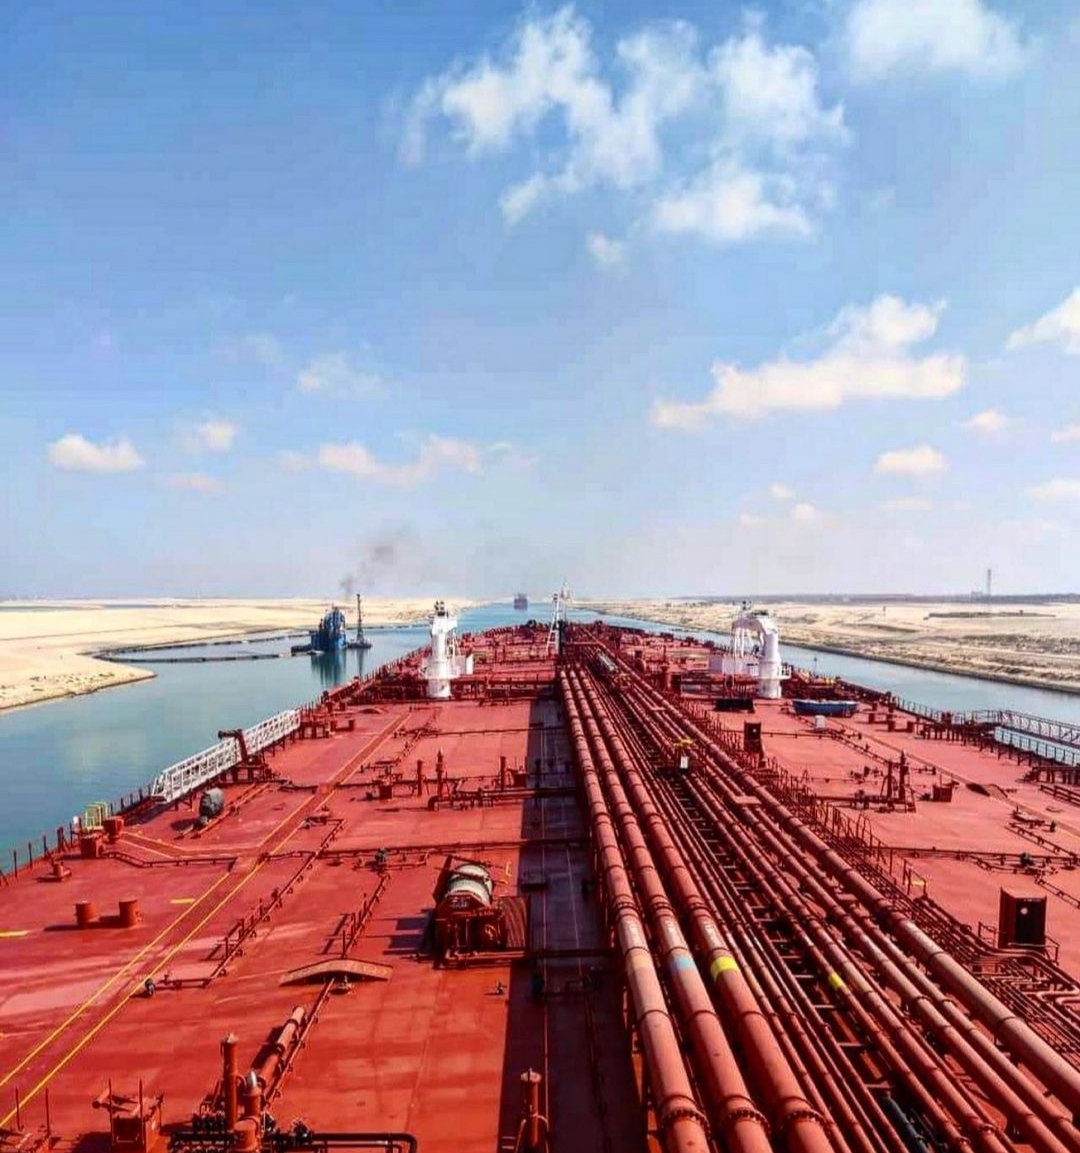 2. Suez canal Credits to Giorgos Minopetros